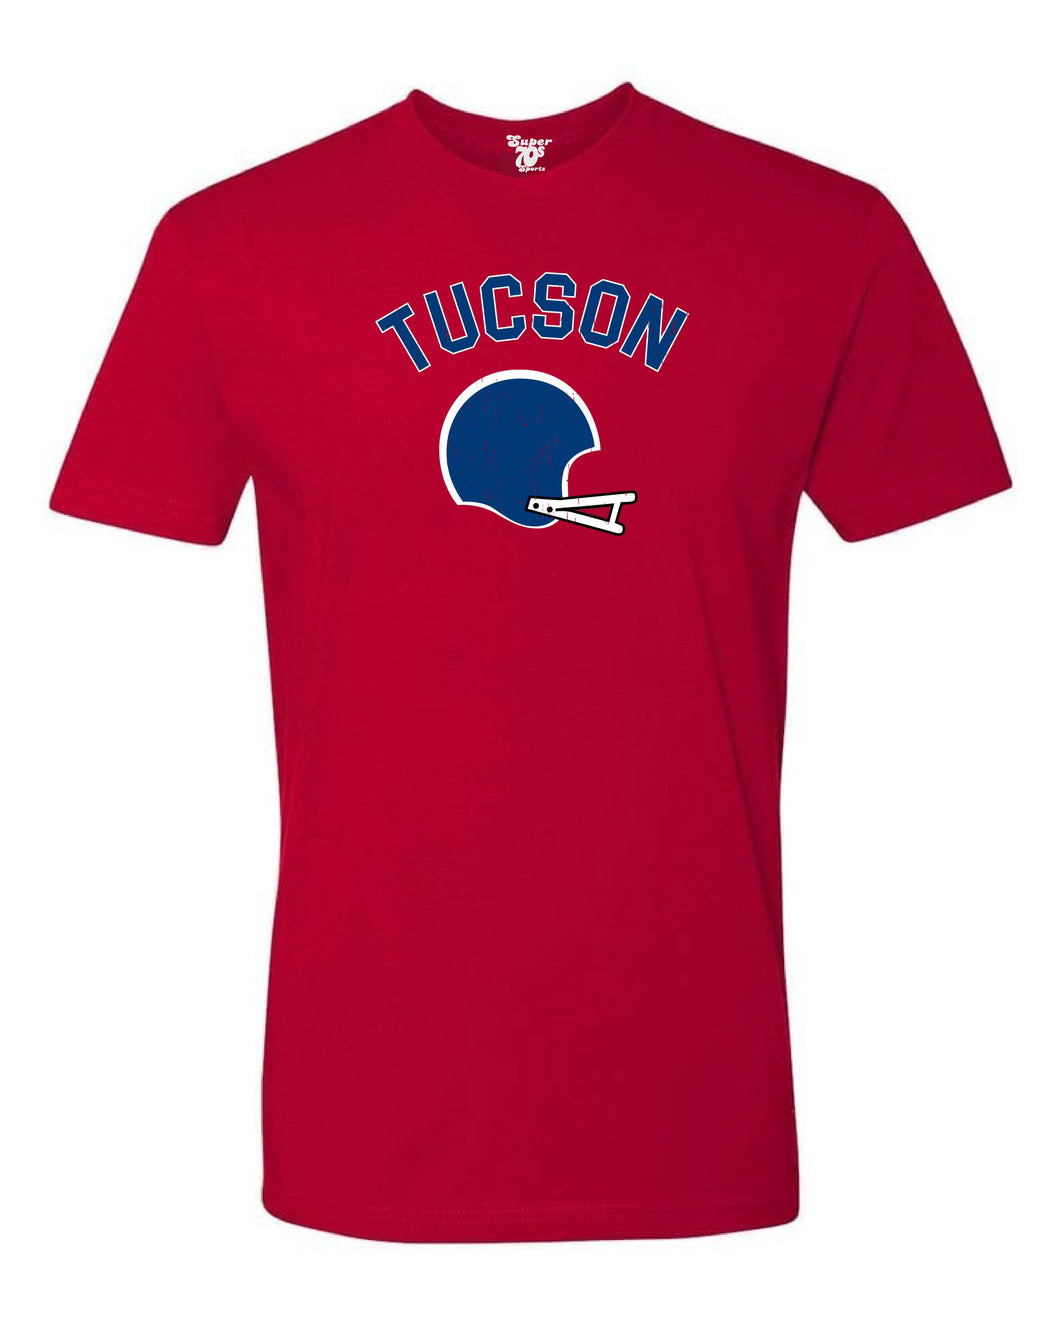 Tucson Football Tee